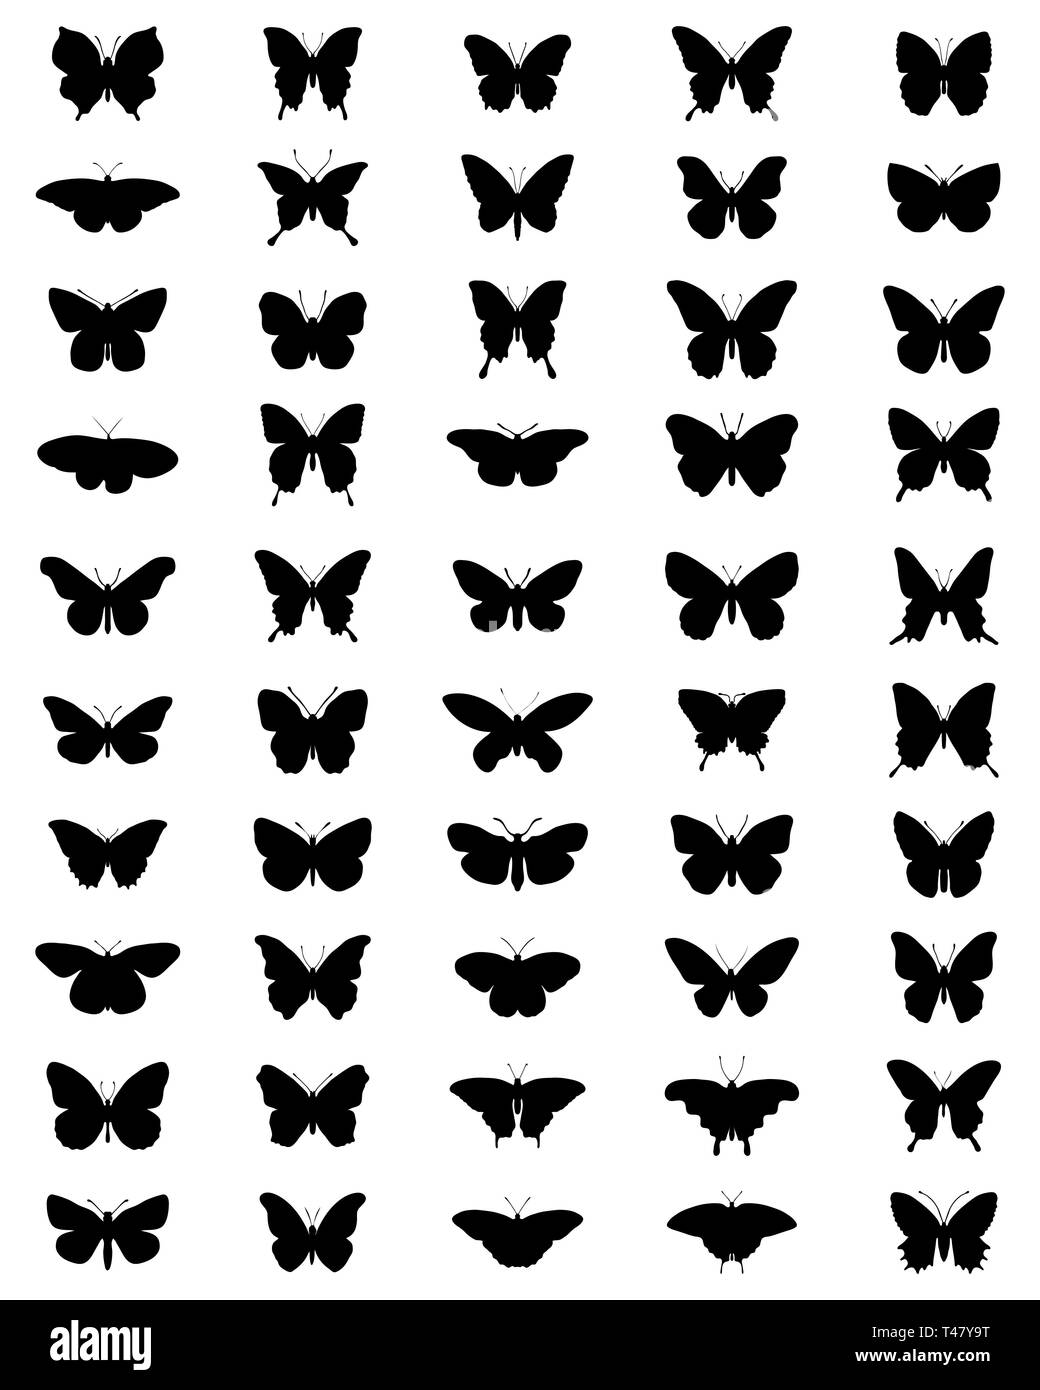 Silhouettes de papillons noirs sur fond blanc Banque D'Images